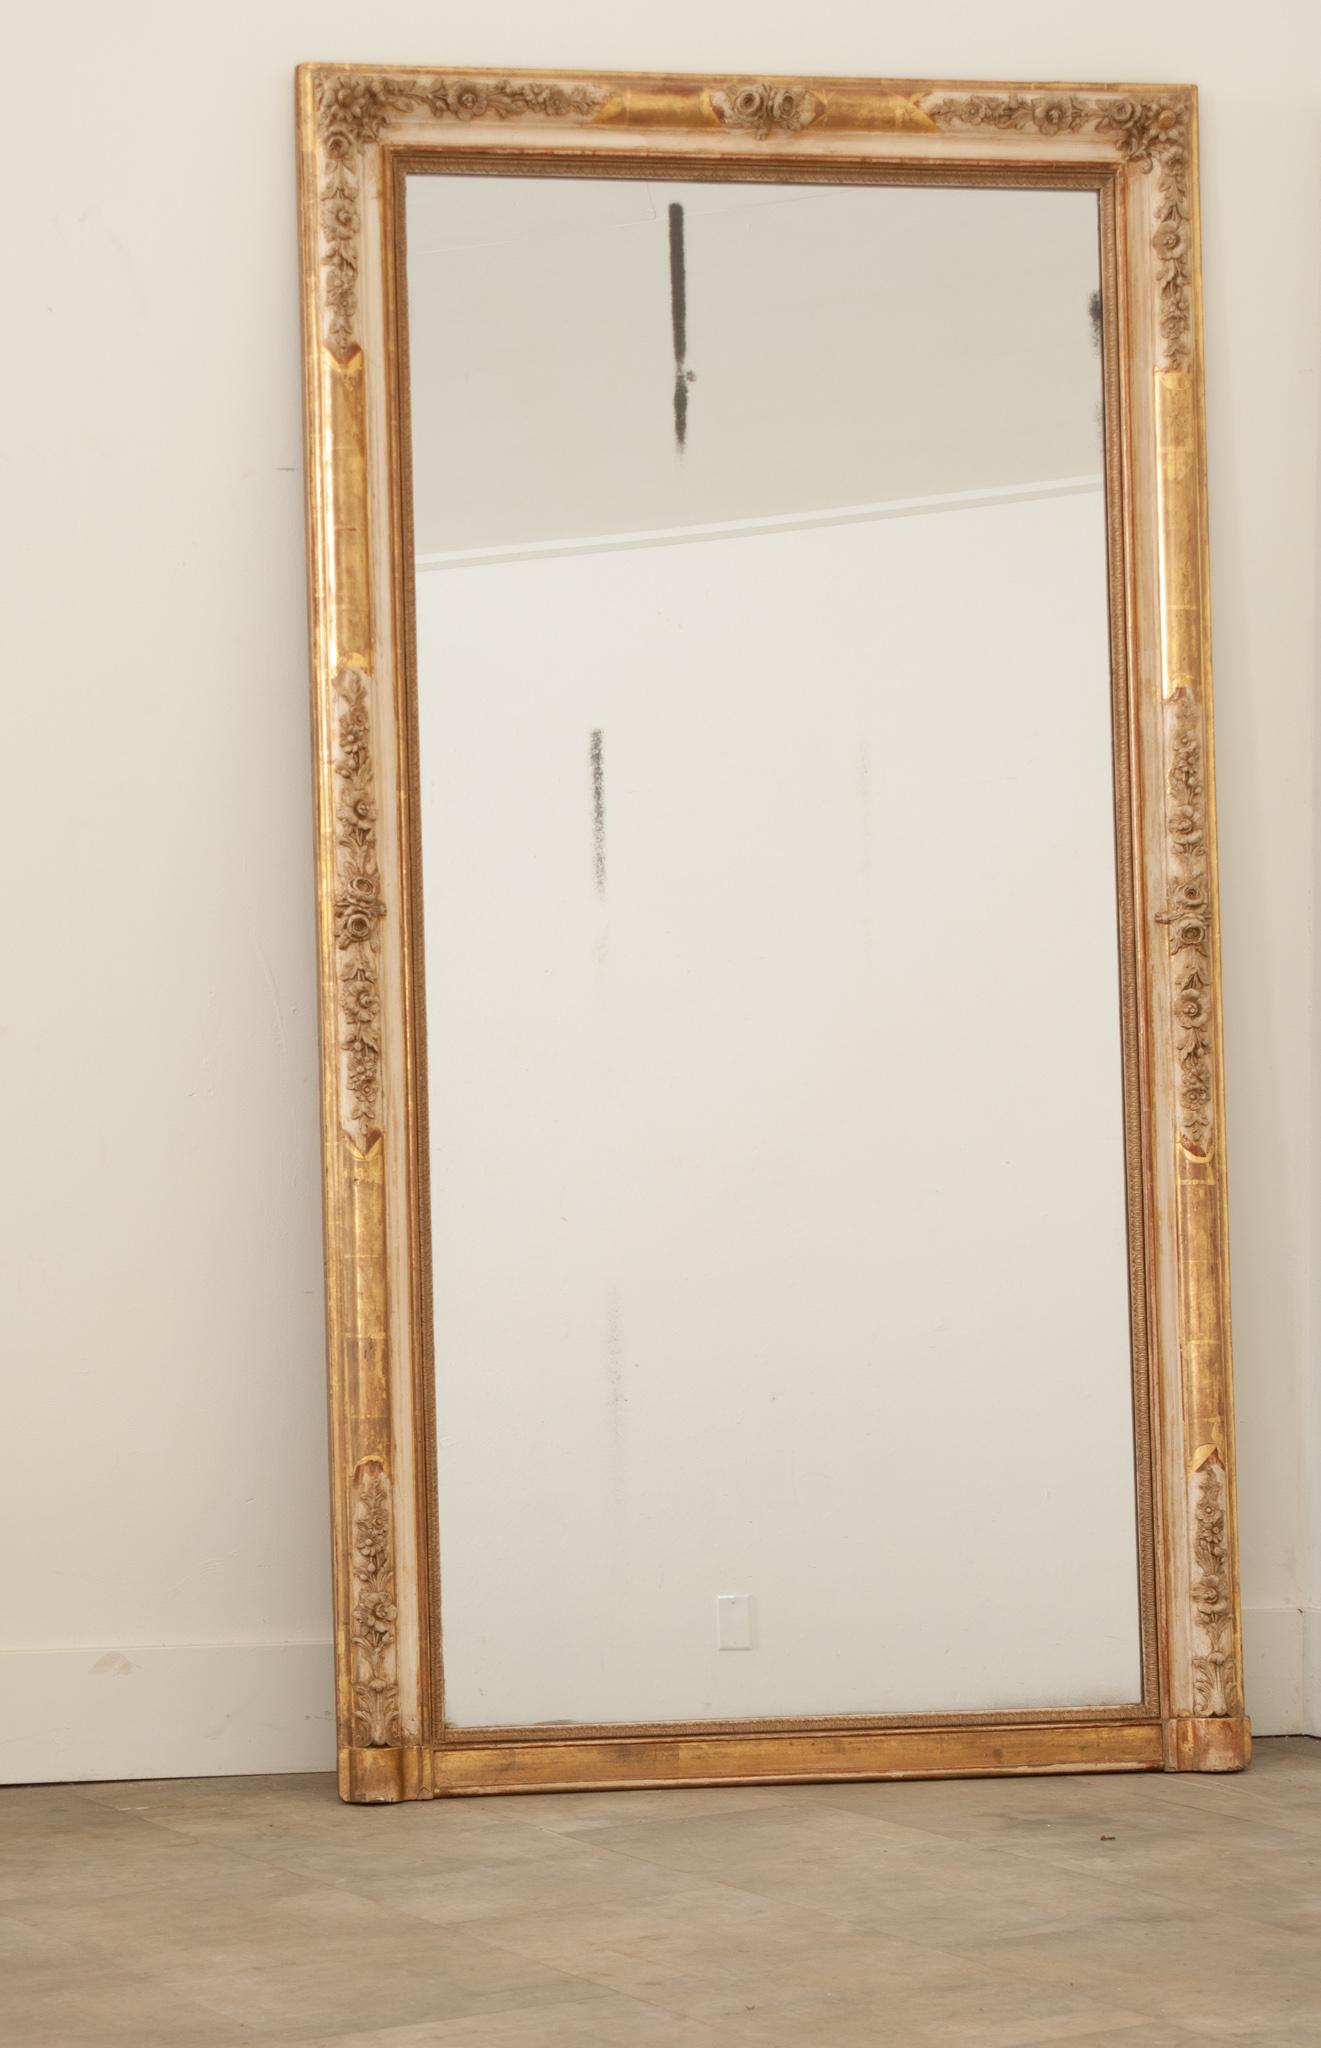 Magnifique miroir de cheminée sculpté et doré, avec plaque de miroir d'origine, fabriqué à la main en France au XIXe siècle. Ce miroir est grand, beau et regorge de détails exceptionnels. Le cadre finement sculpté est superbe, avec des parcelles de